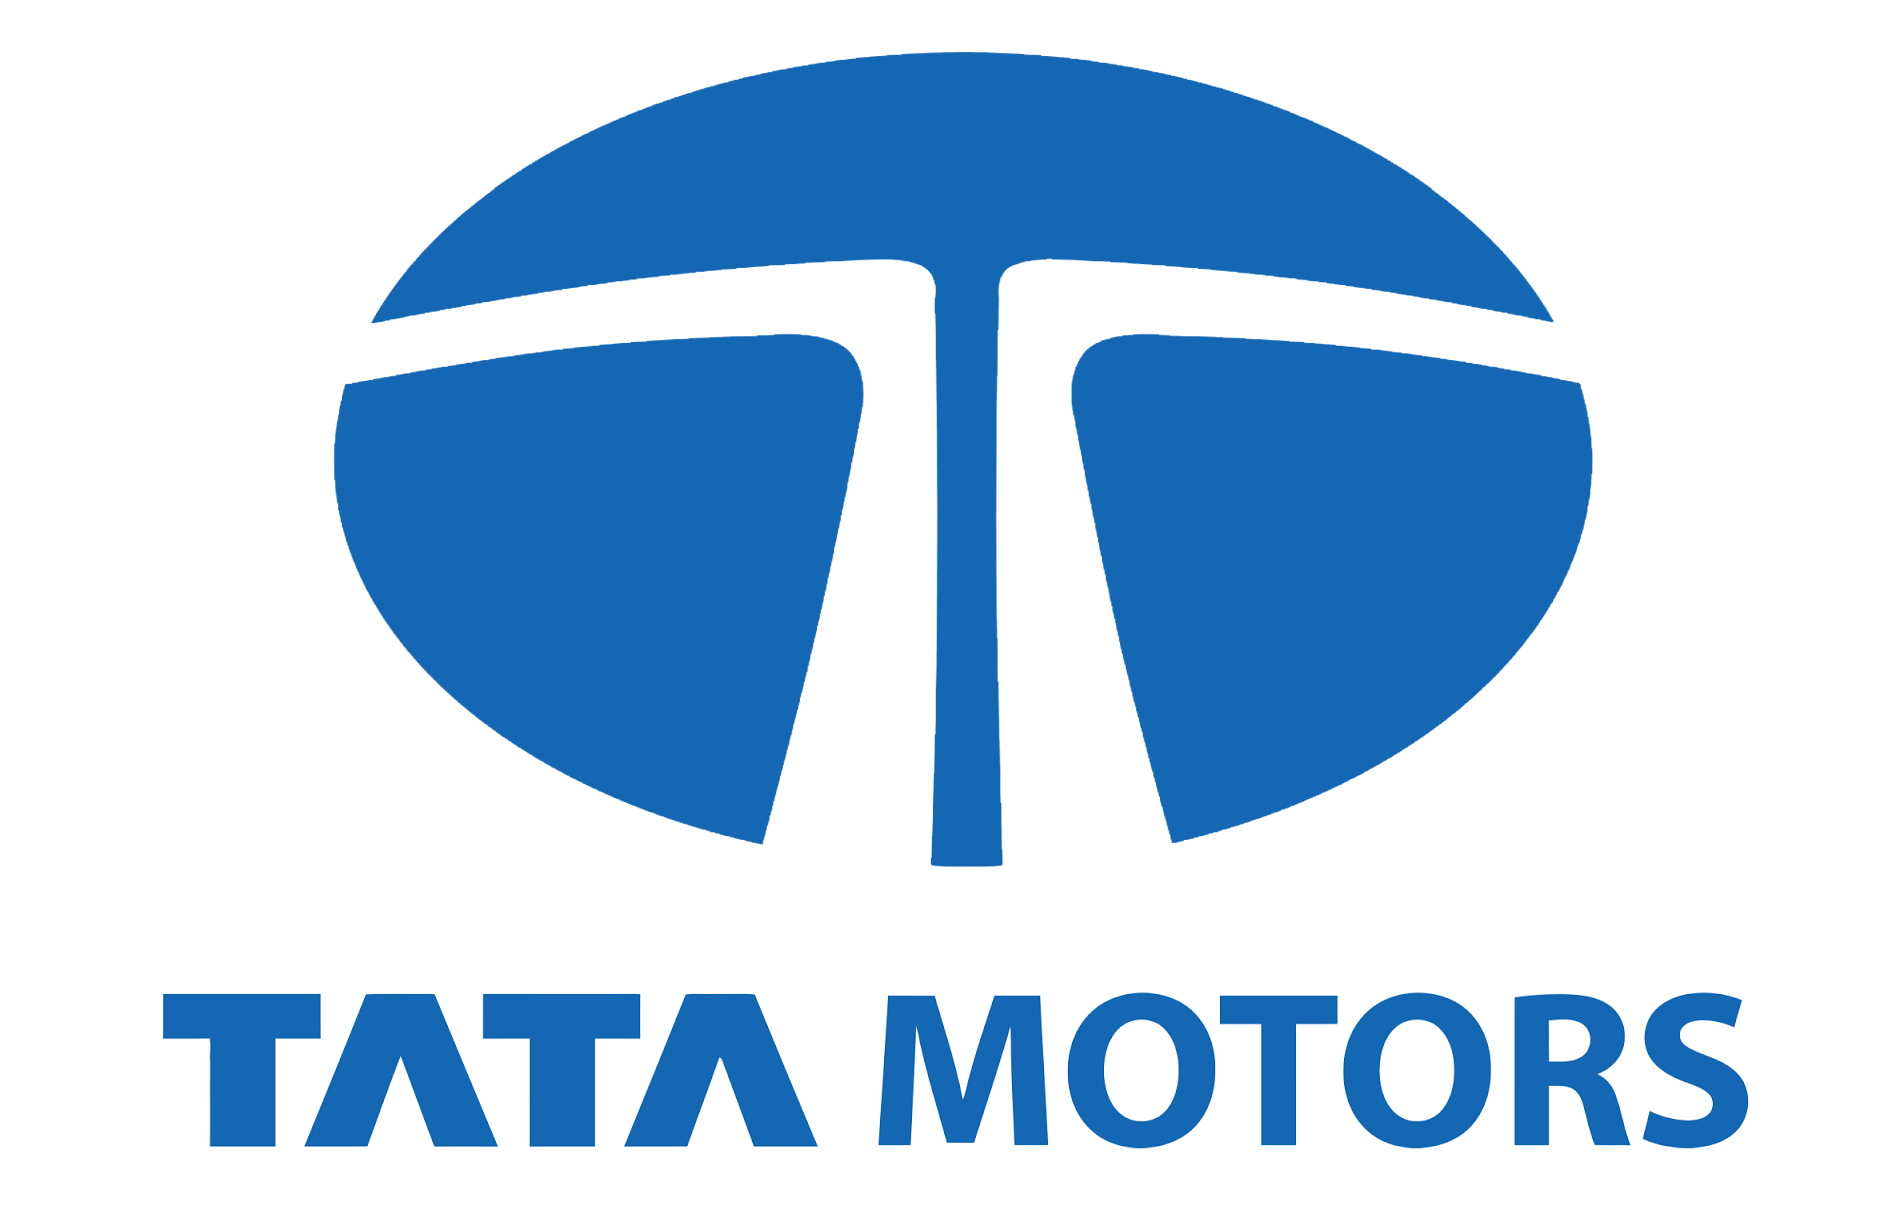 Tata Motors Cars Showroom - Varenyam Motor Car Logo